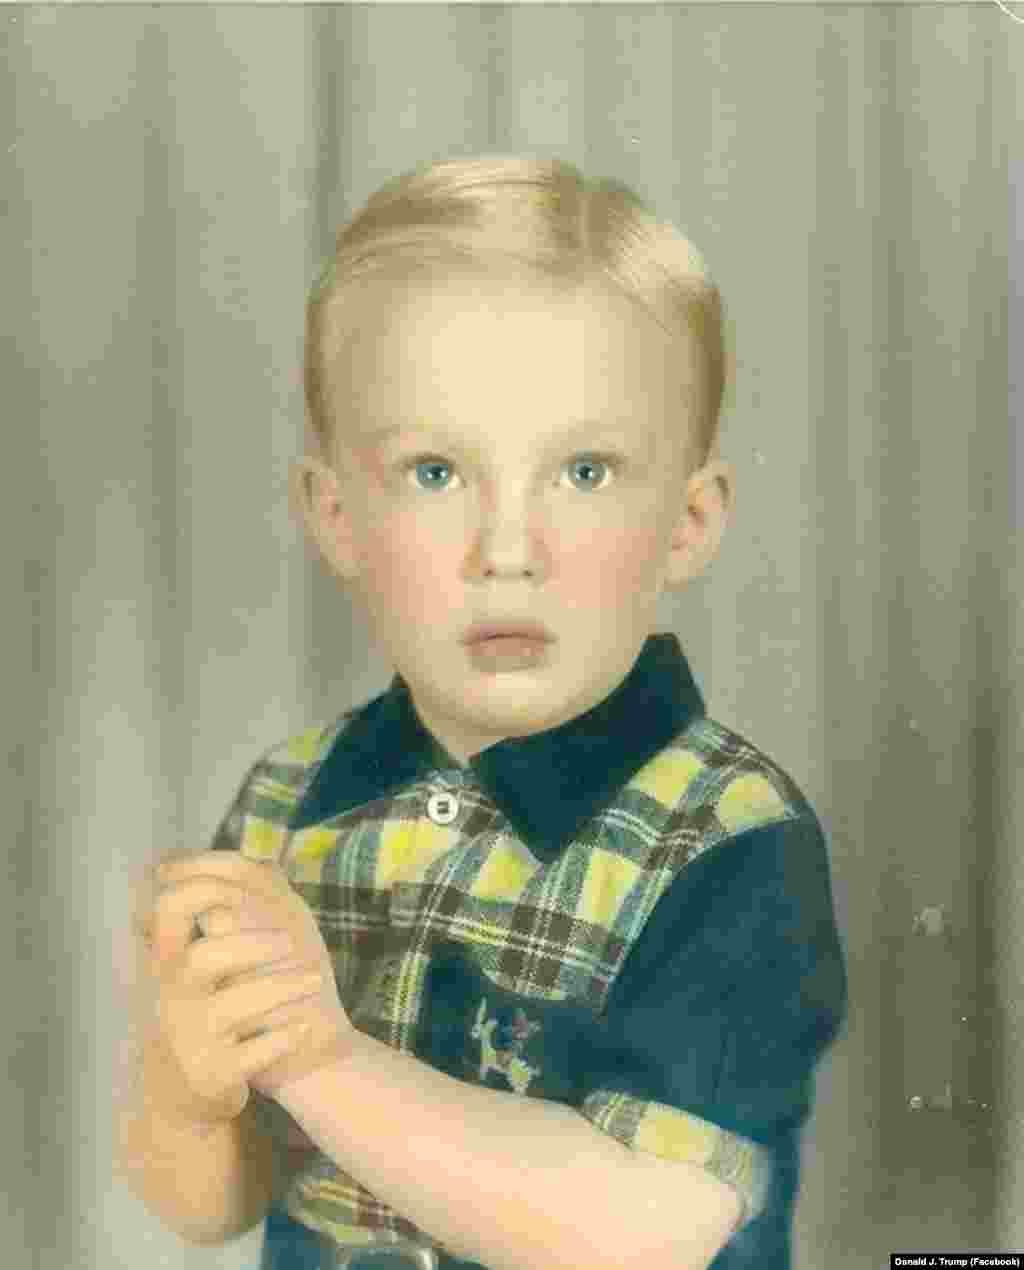 დონალდ ტრამპი, რომელიც &nbsp;დაუთარიღებელ ფოტოზეა გამოსახული, დაიბადა 1946 წელს ნიუ-იორკში, მდიდარ ოჯახში.&nbsp;